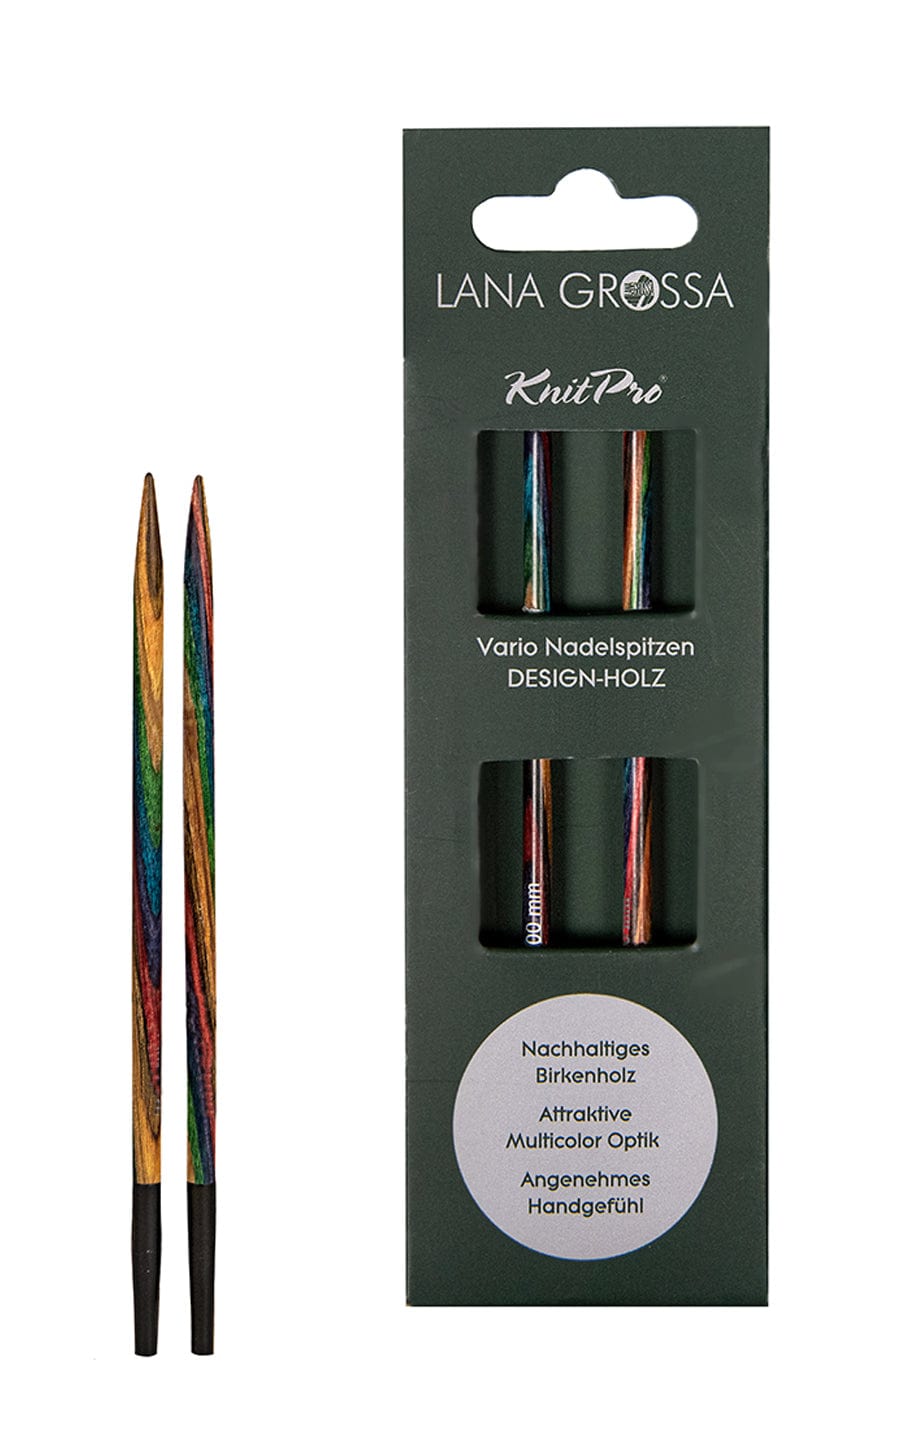 Kurze 6,0 mm Nadelspitze Vario aus Holz - neue Verpackung von LANA GROSSA jetzt online kaufen bei OONIQUE